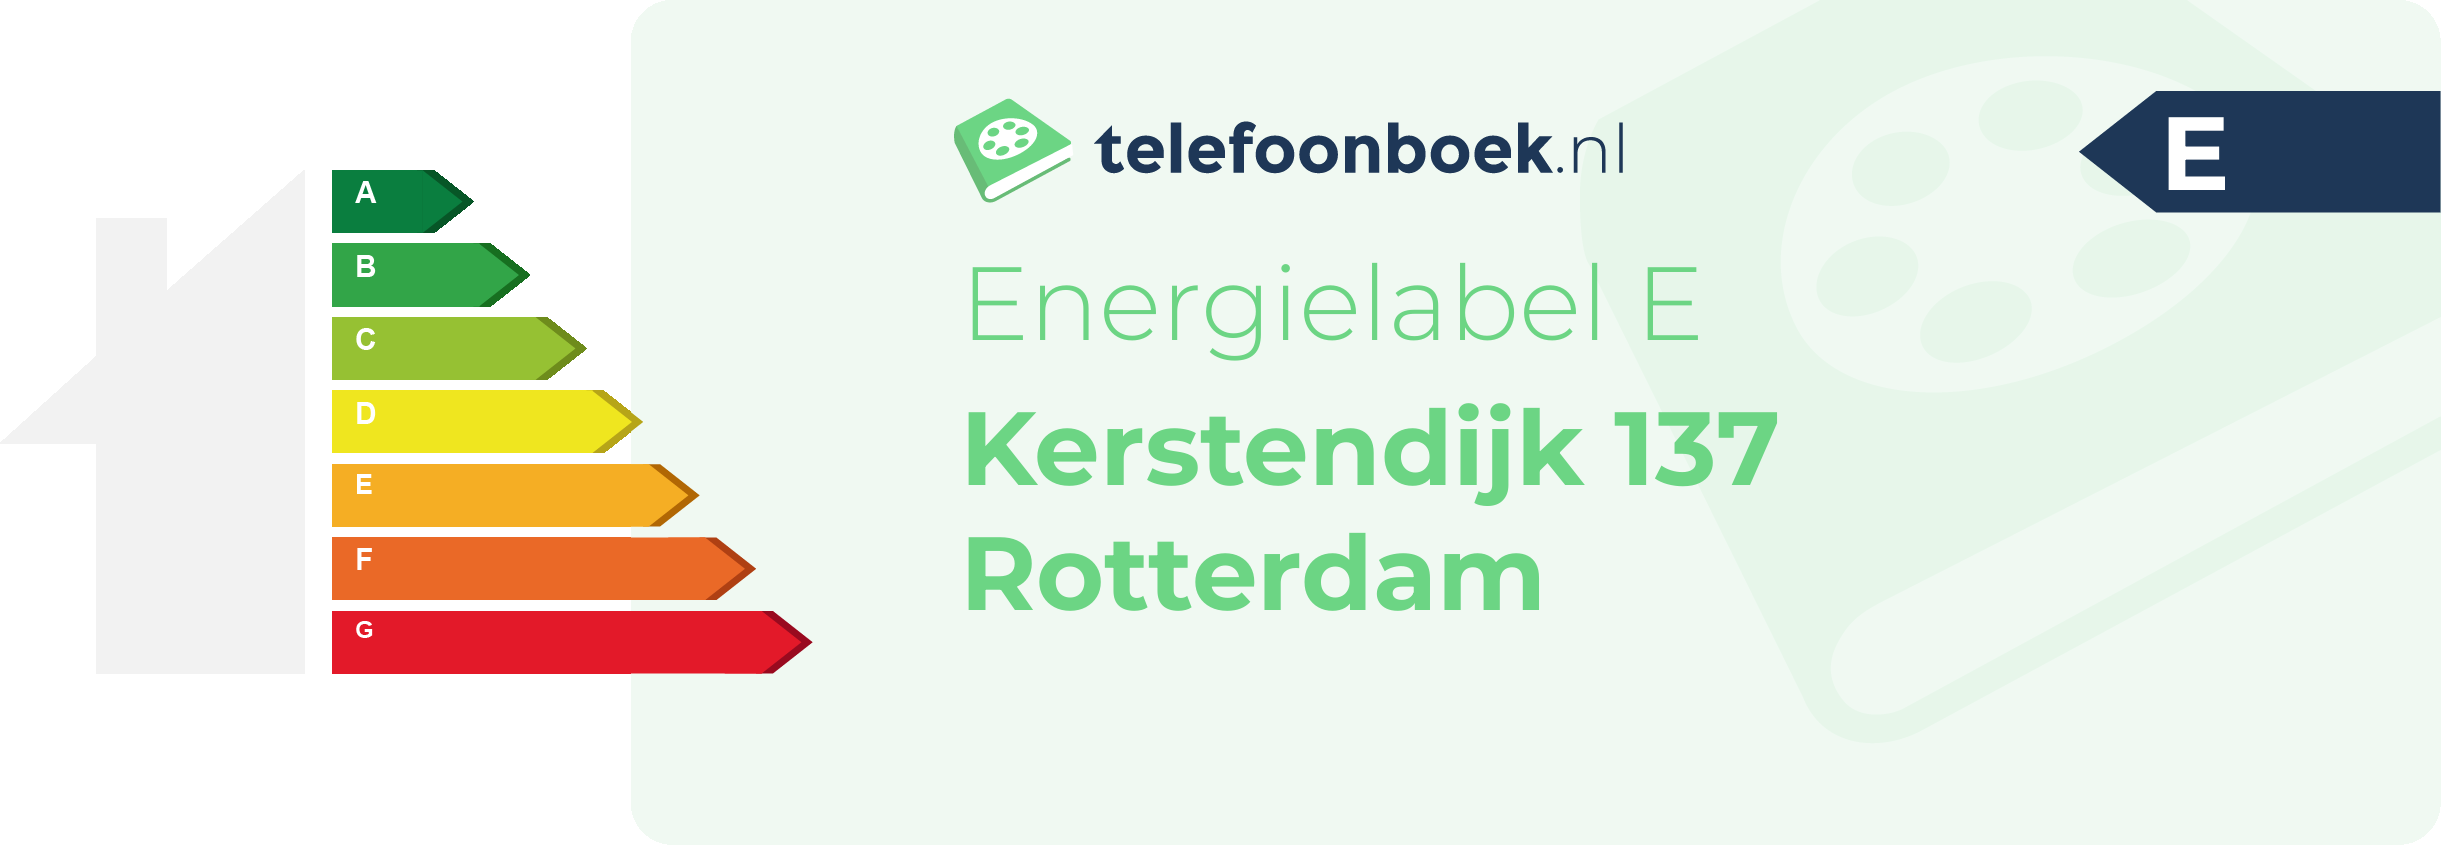 Energielabel Kerstendijk 137 Rotterdam